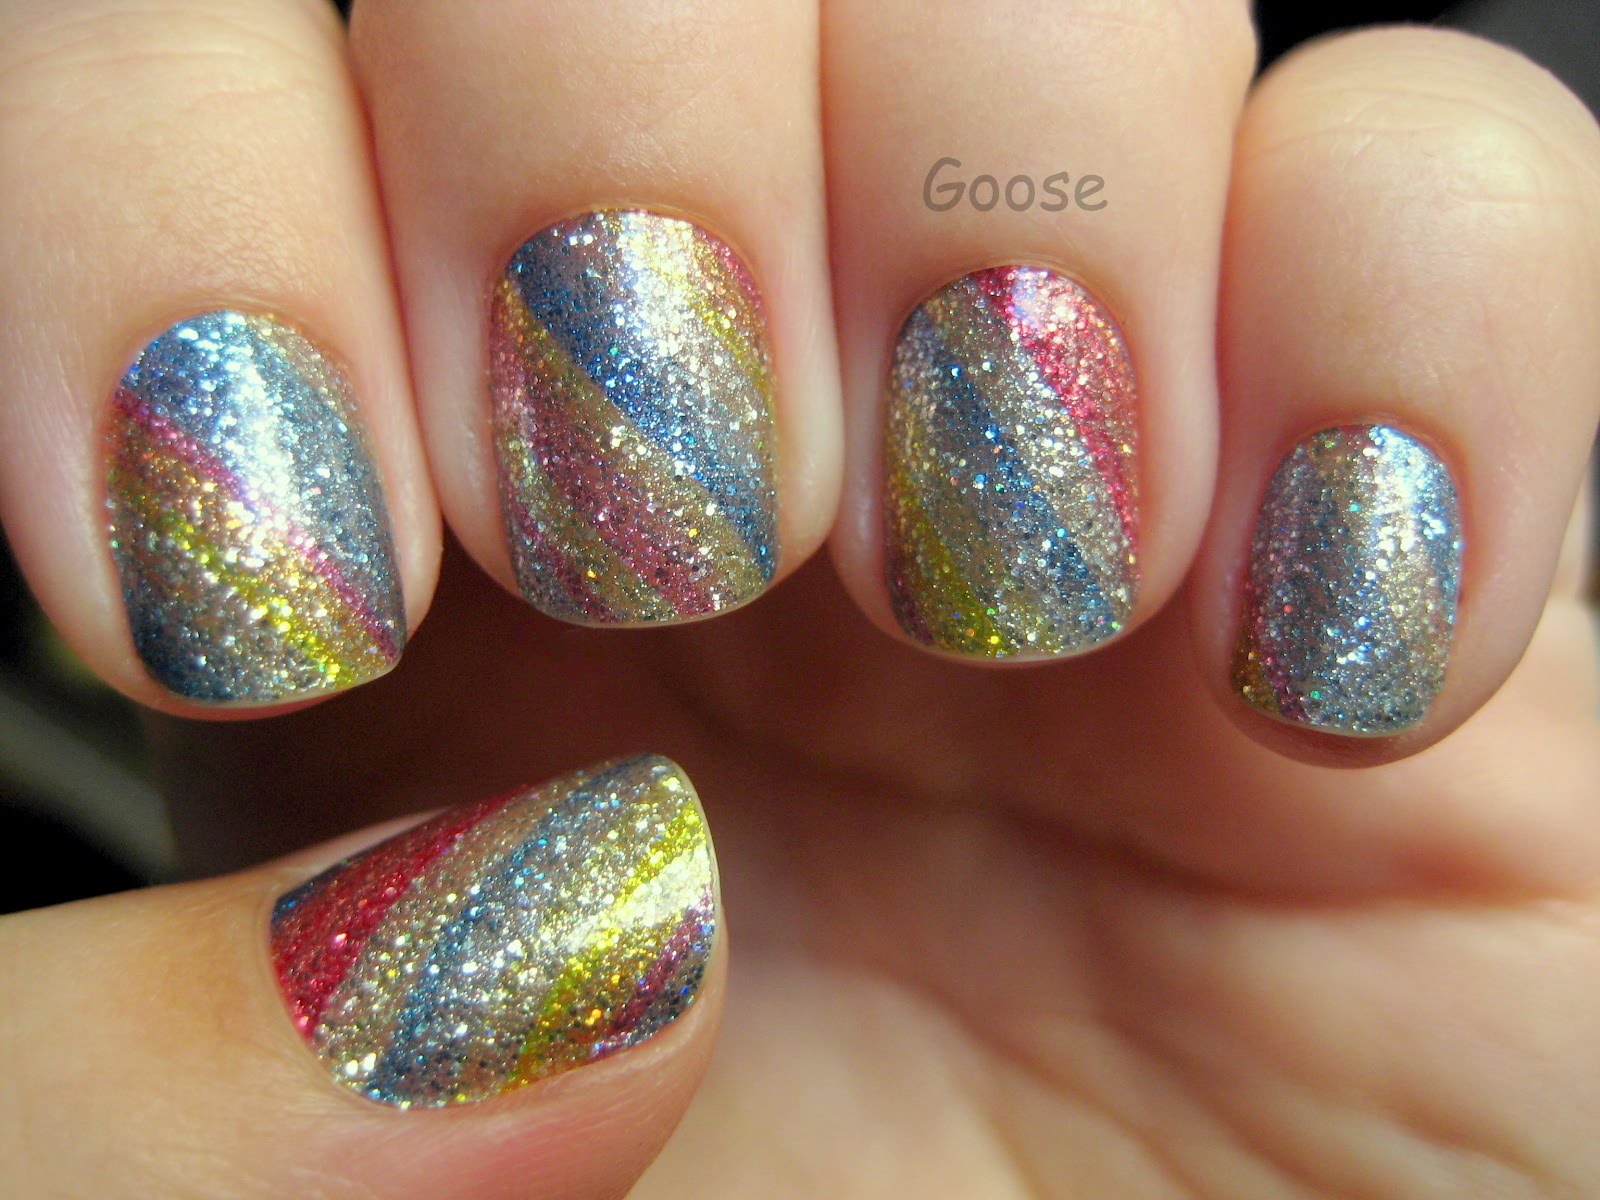 9. Incoco Glitter Nail Strips - wide 9